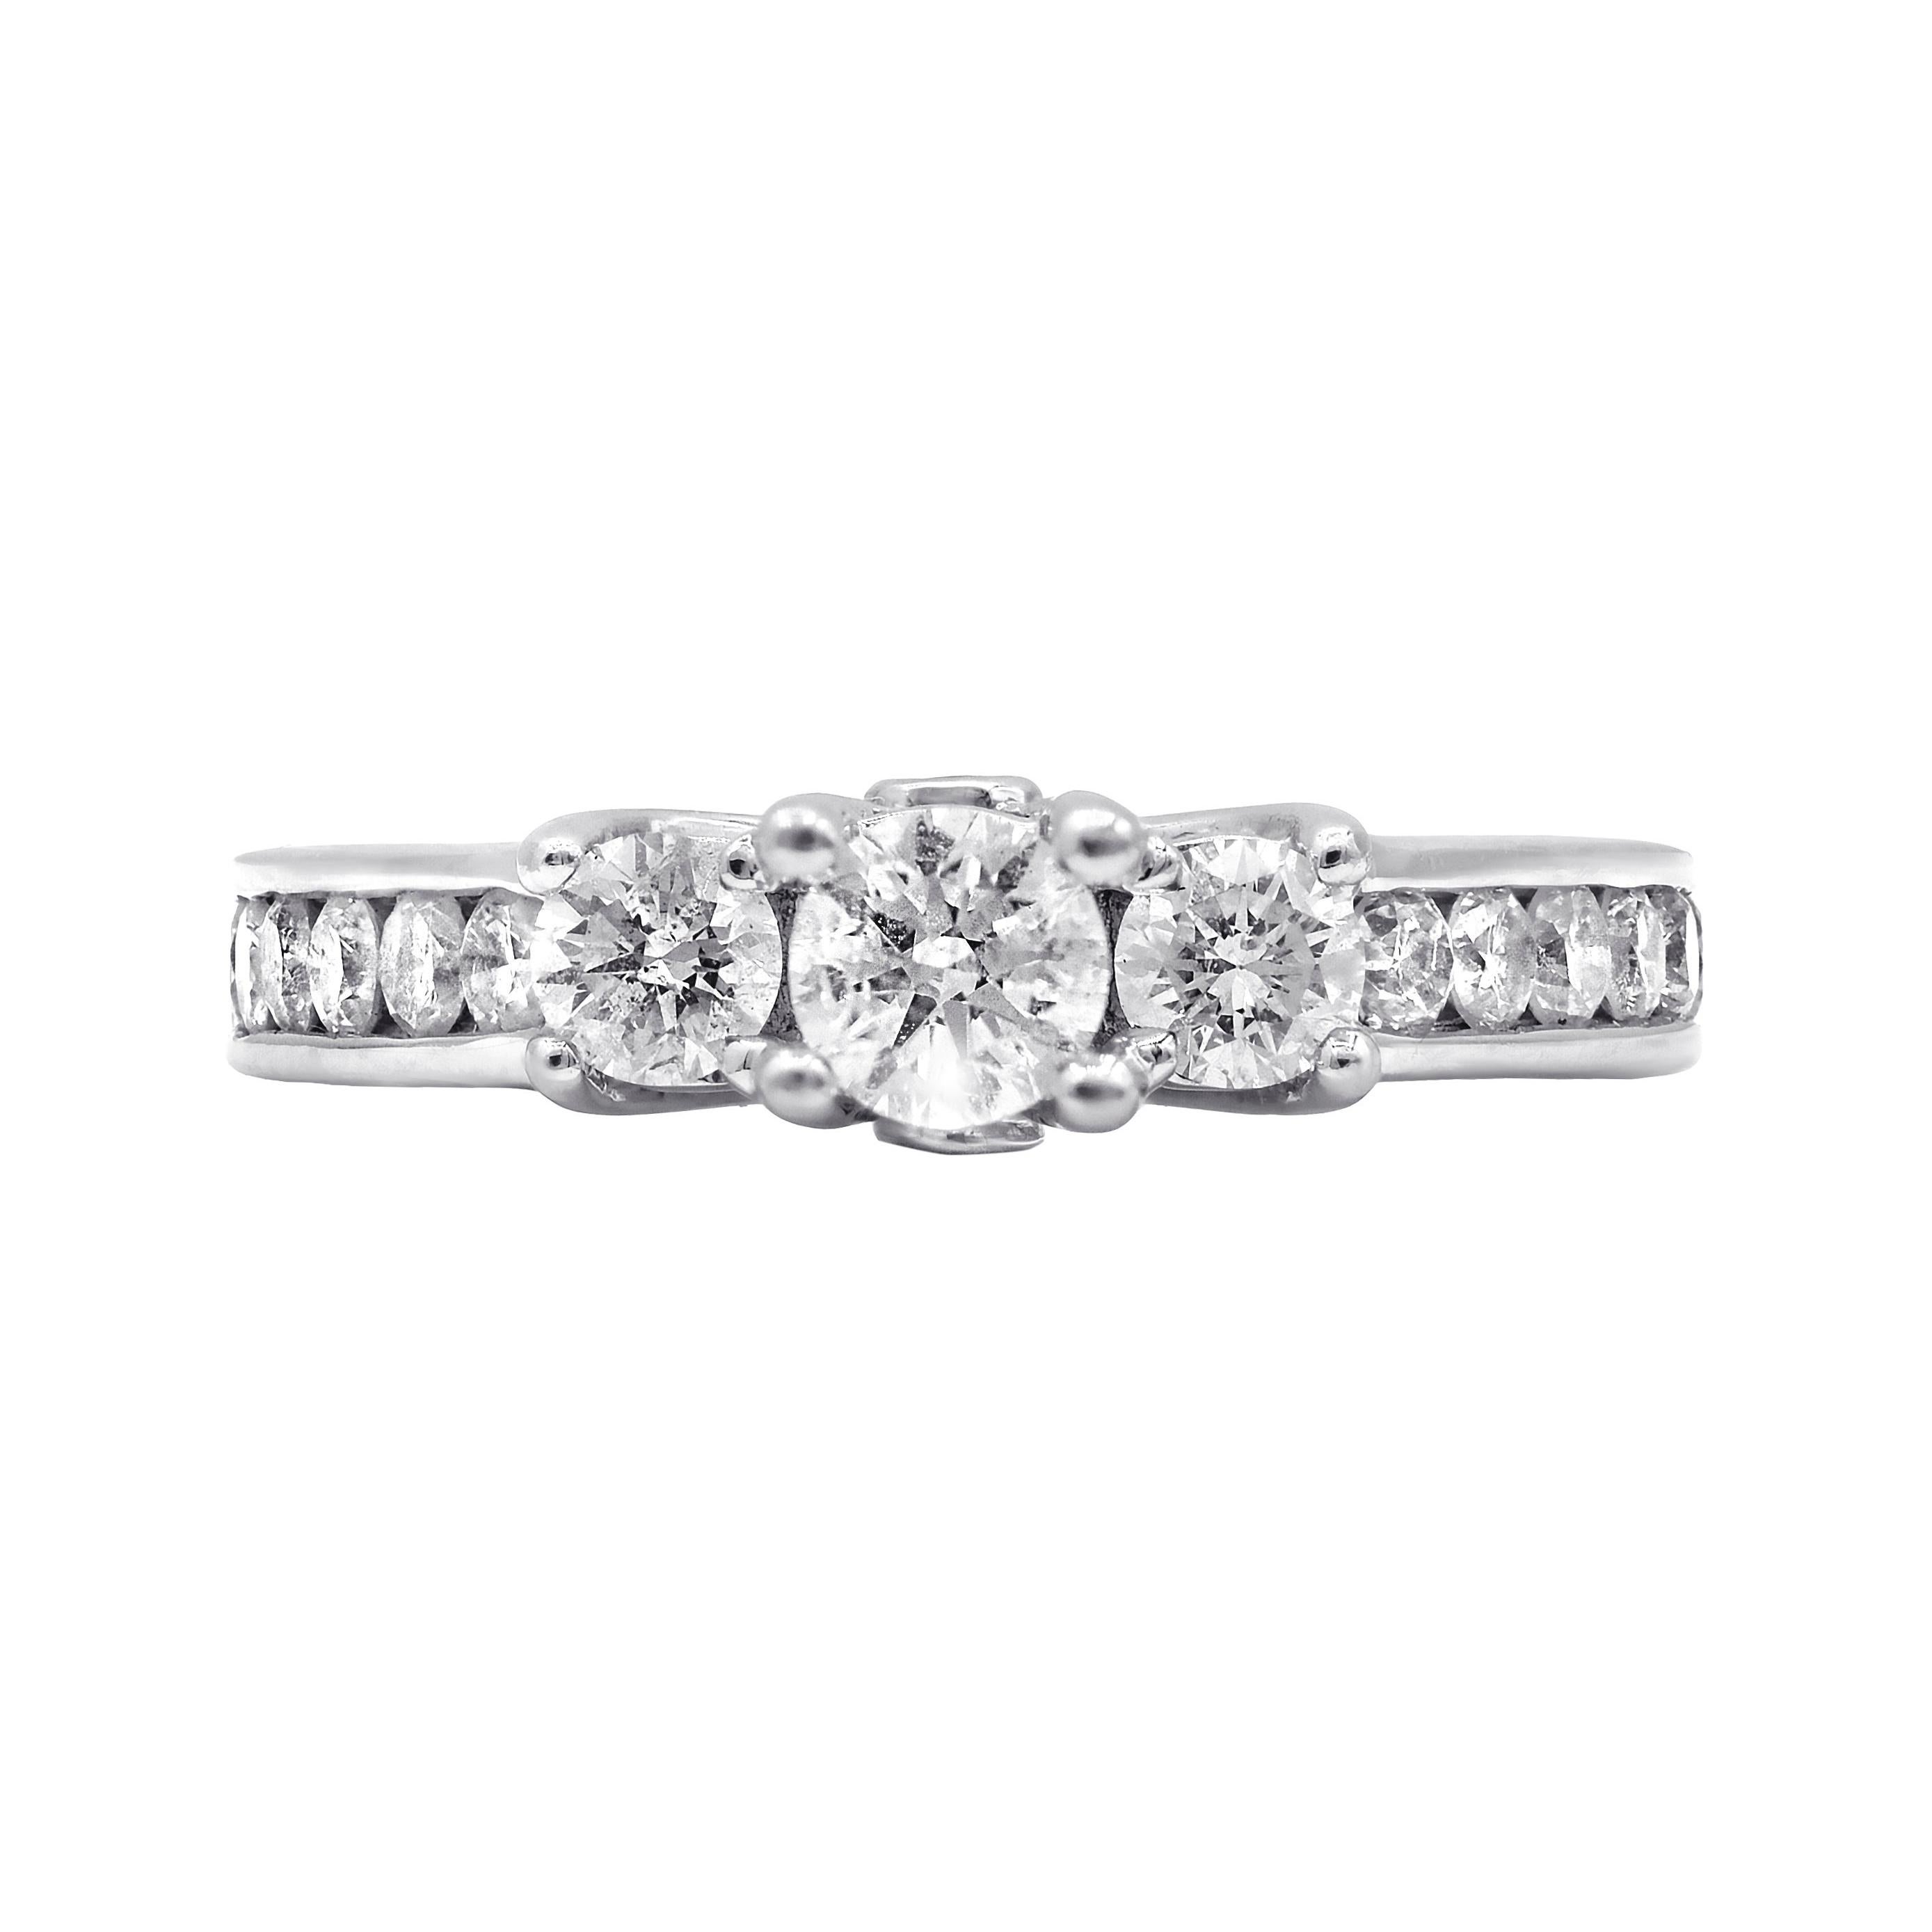 Diana M. Fine Jewelry 14k 1.30 Ct. tw. Diamond Ring For Sale